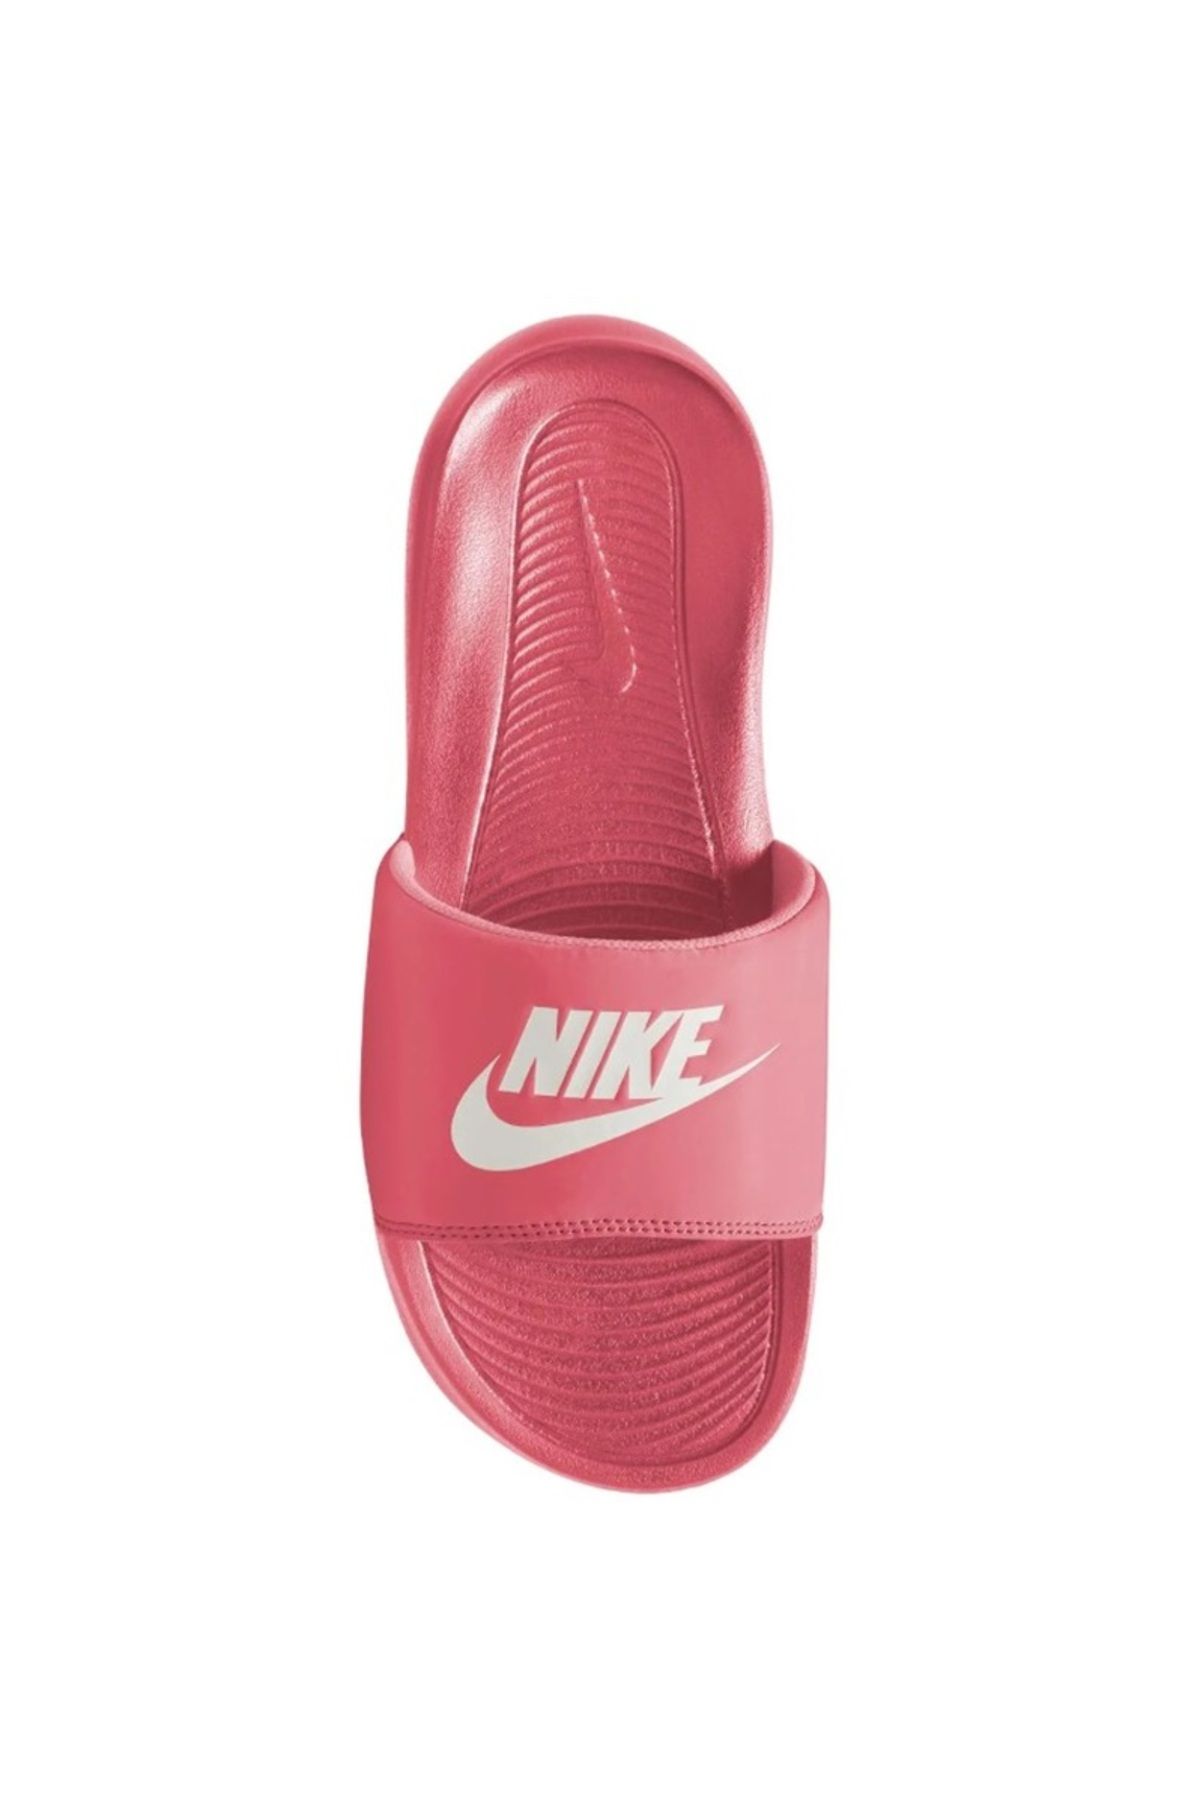 Nike Victori One Slide Kadın Pembe Günlük Stil Terlik CN9677-802